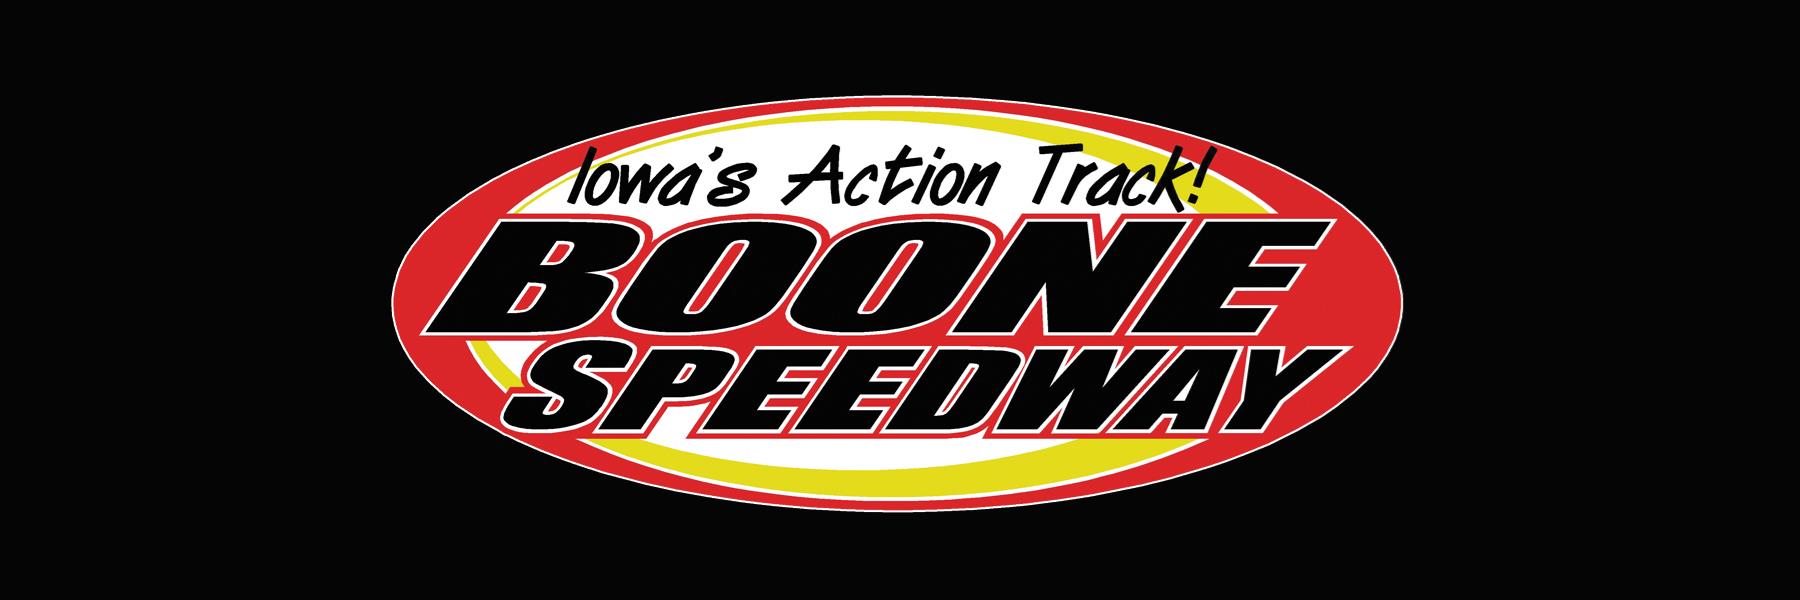 5/26/2018 - Boone Speedway